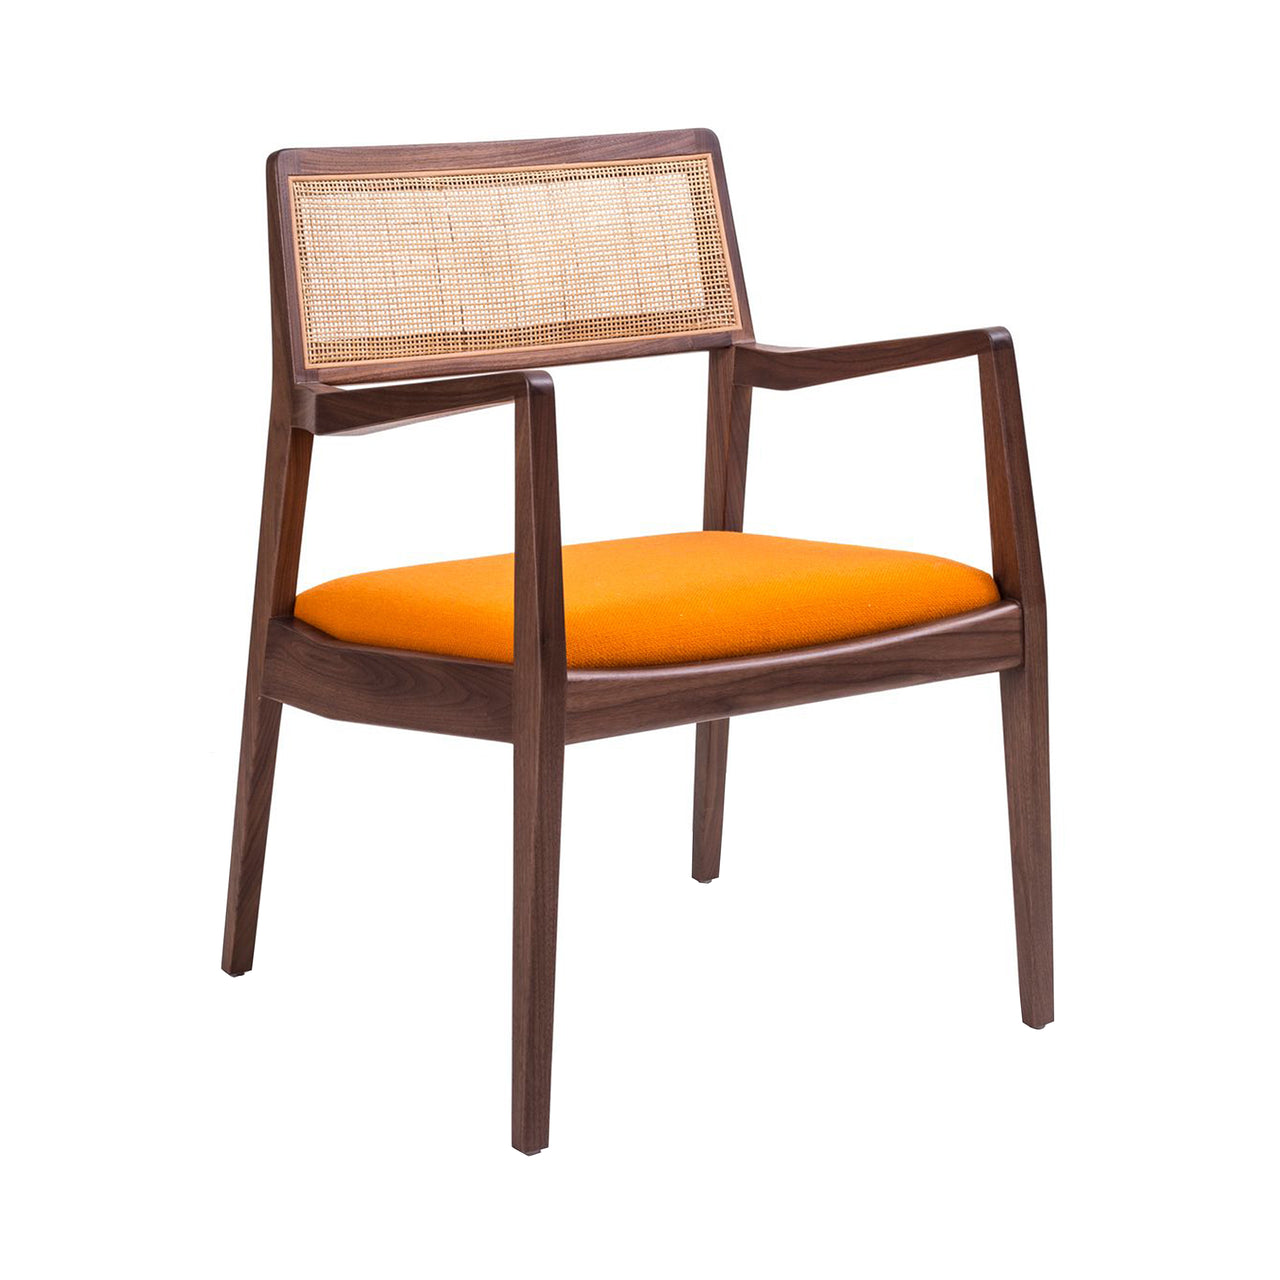 Risom C140 Chair: Natural Walnut